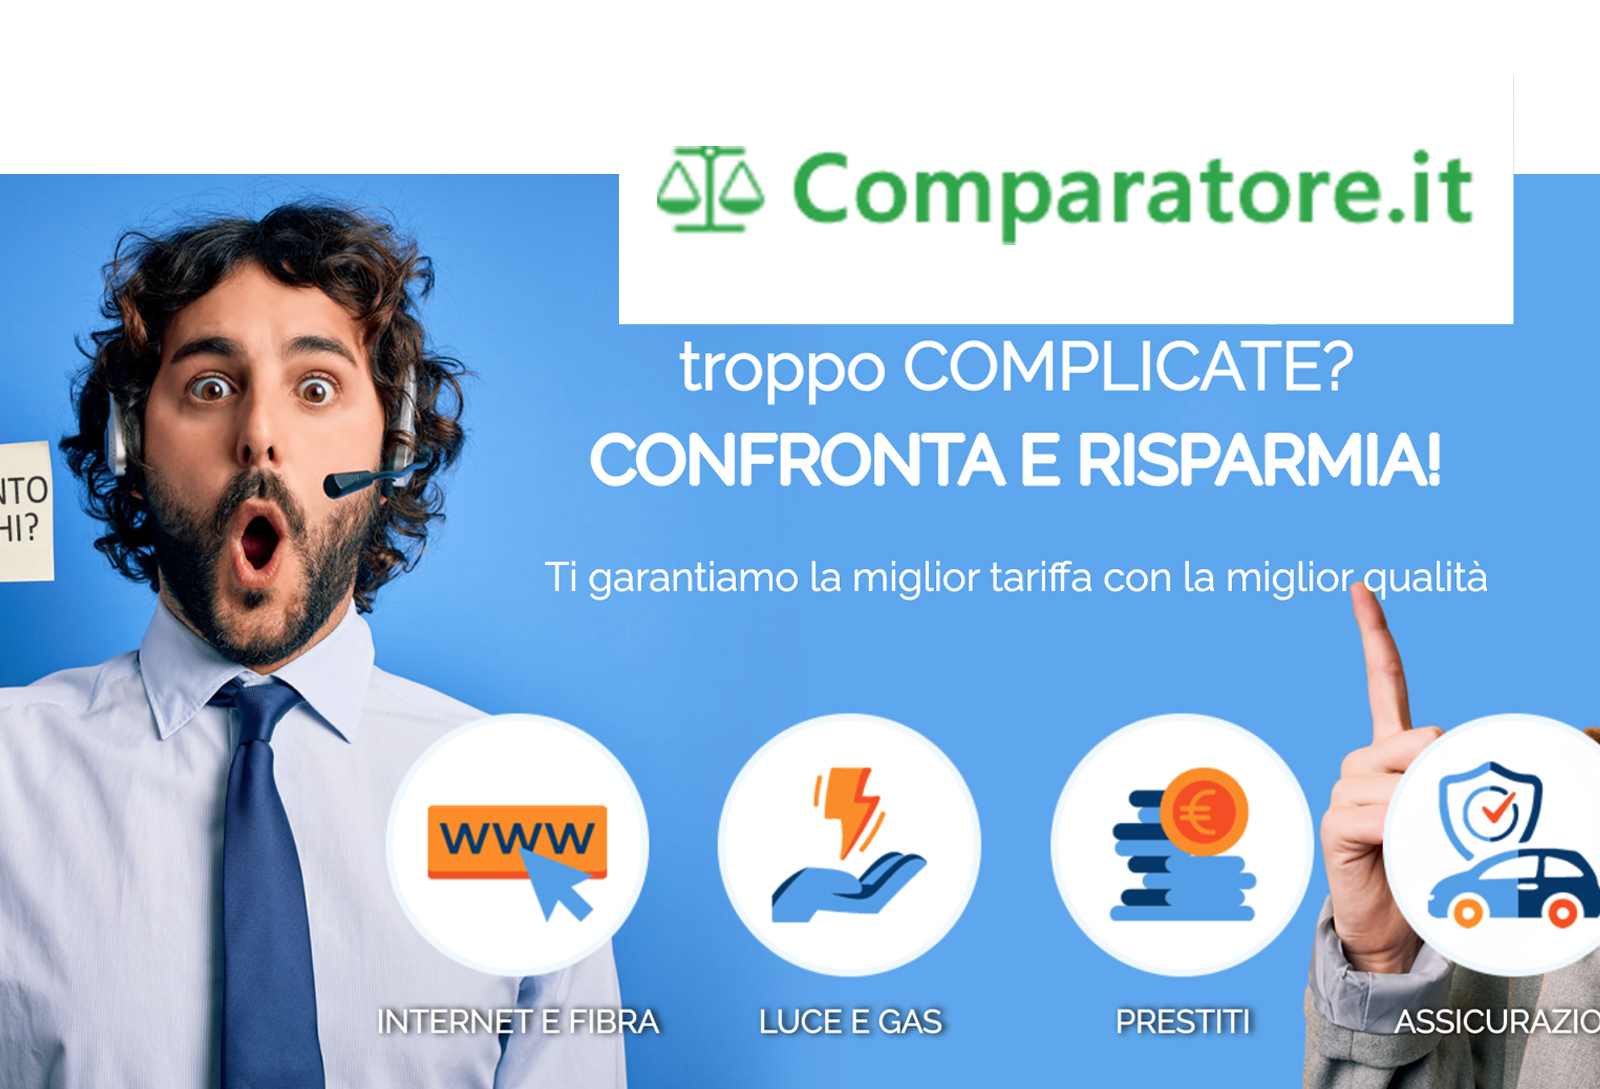 www.comparatore.it